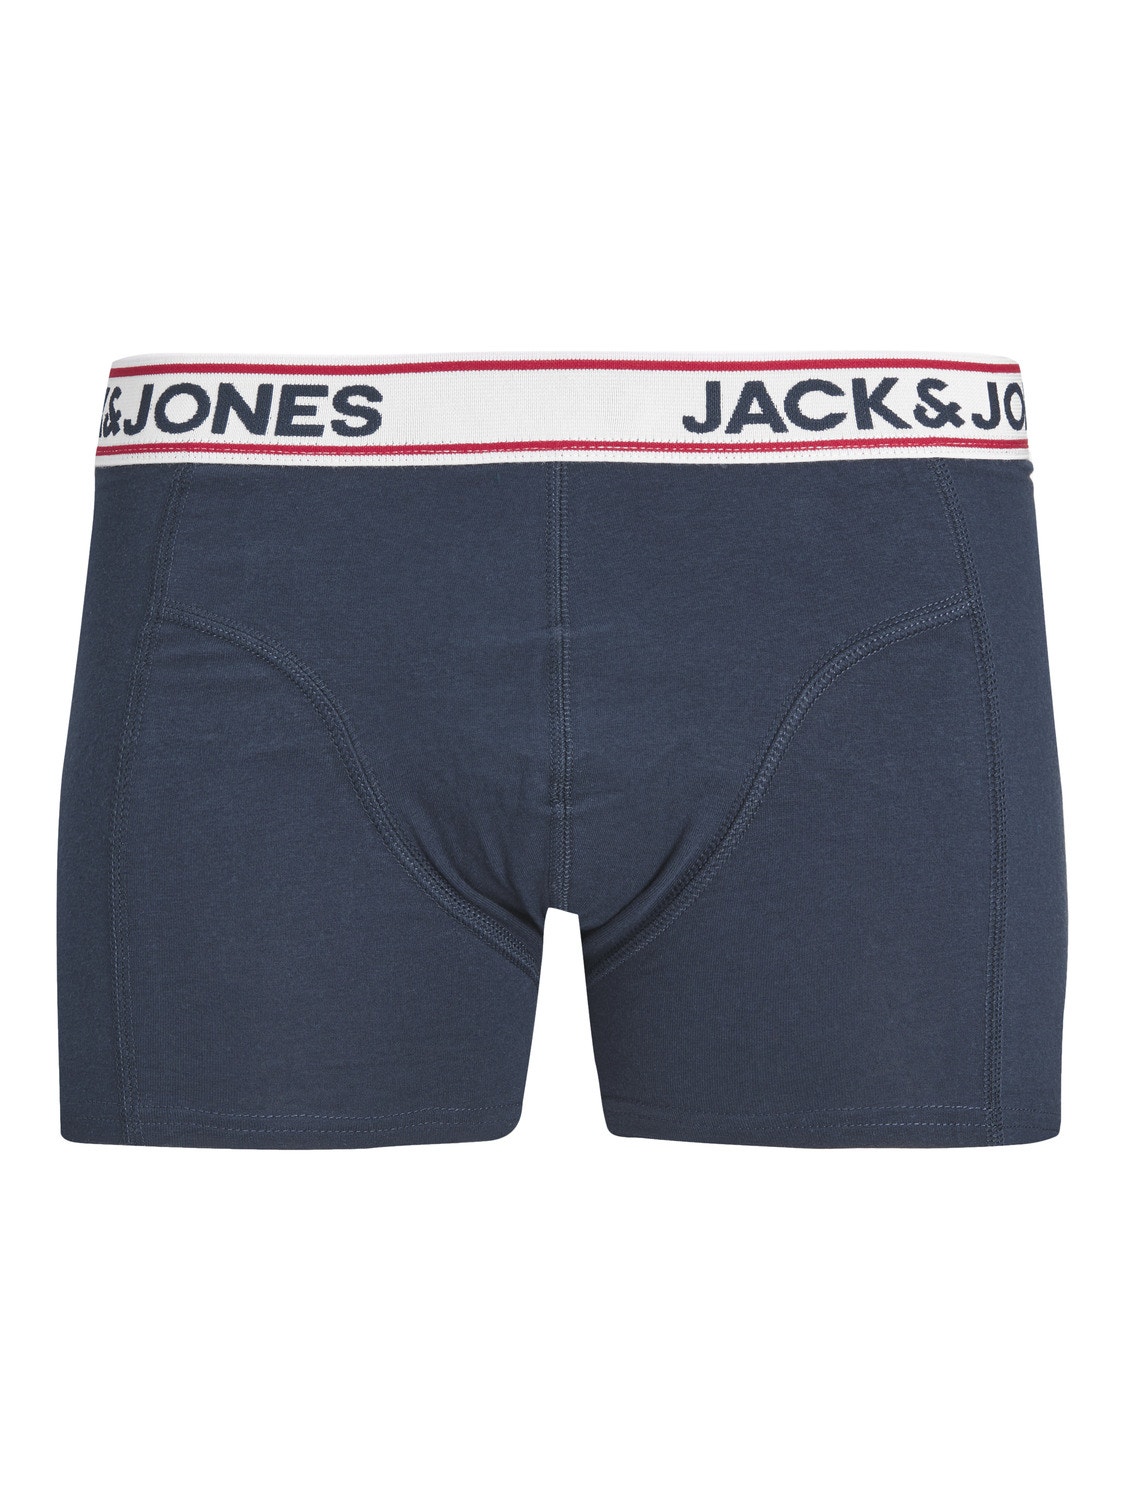 Jack & Jones 3-pack Trunks -Navy Blazer - 12236291